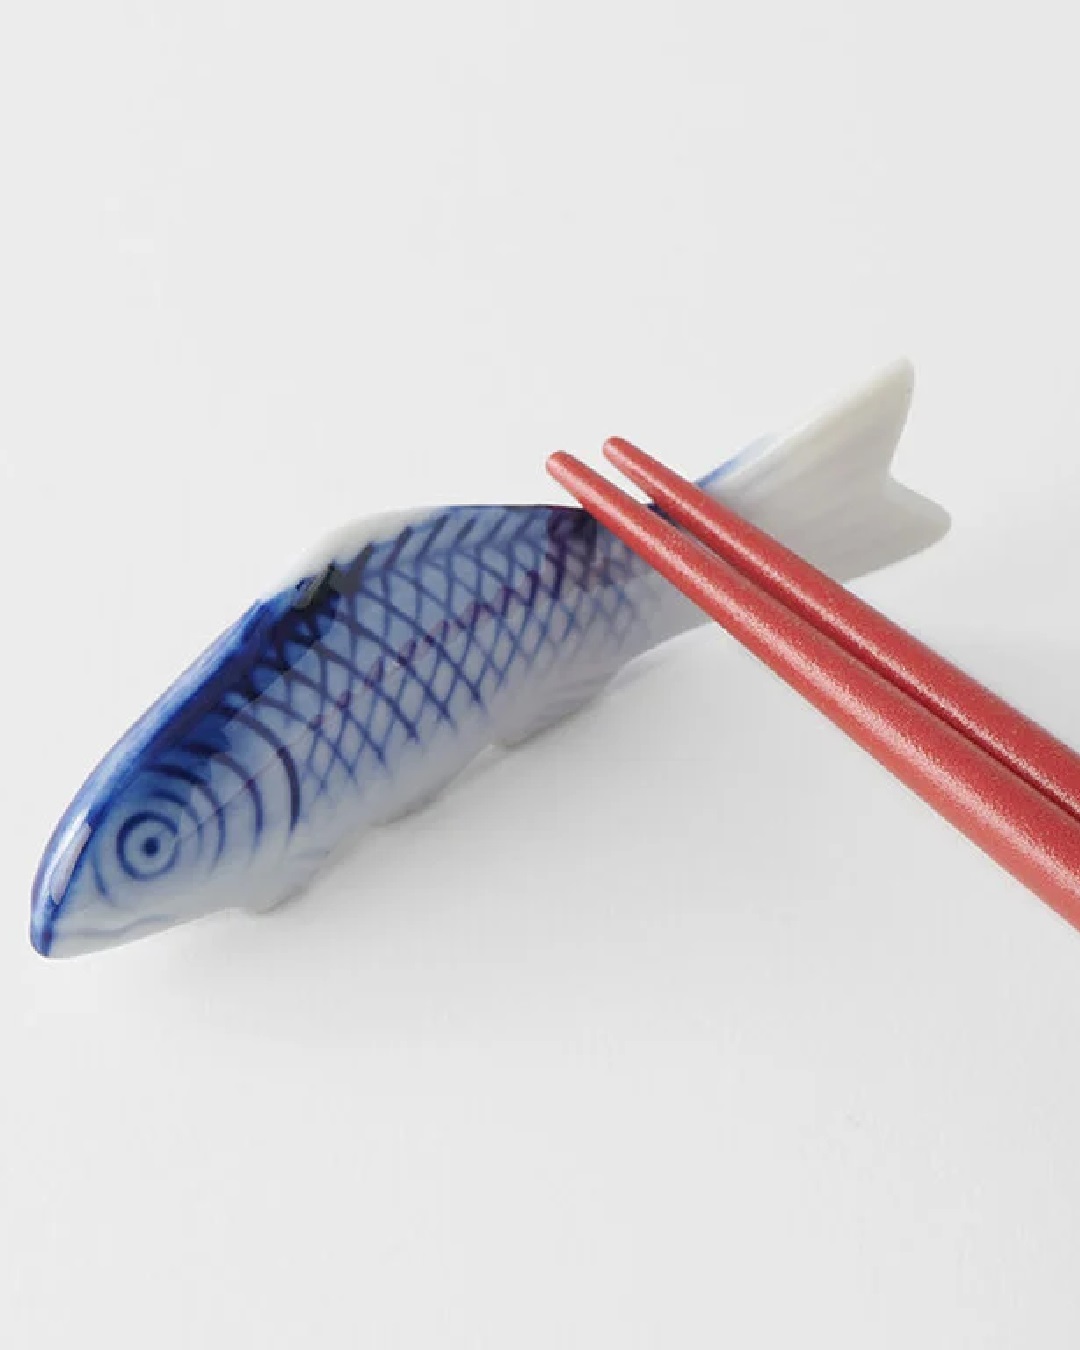 Fish chopstick rest with rest chopstick on it